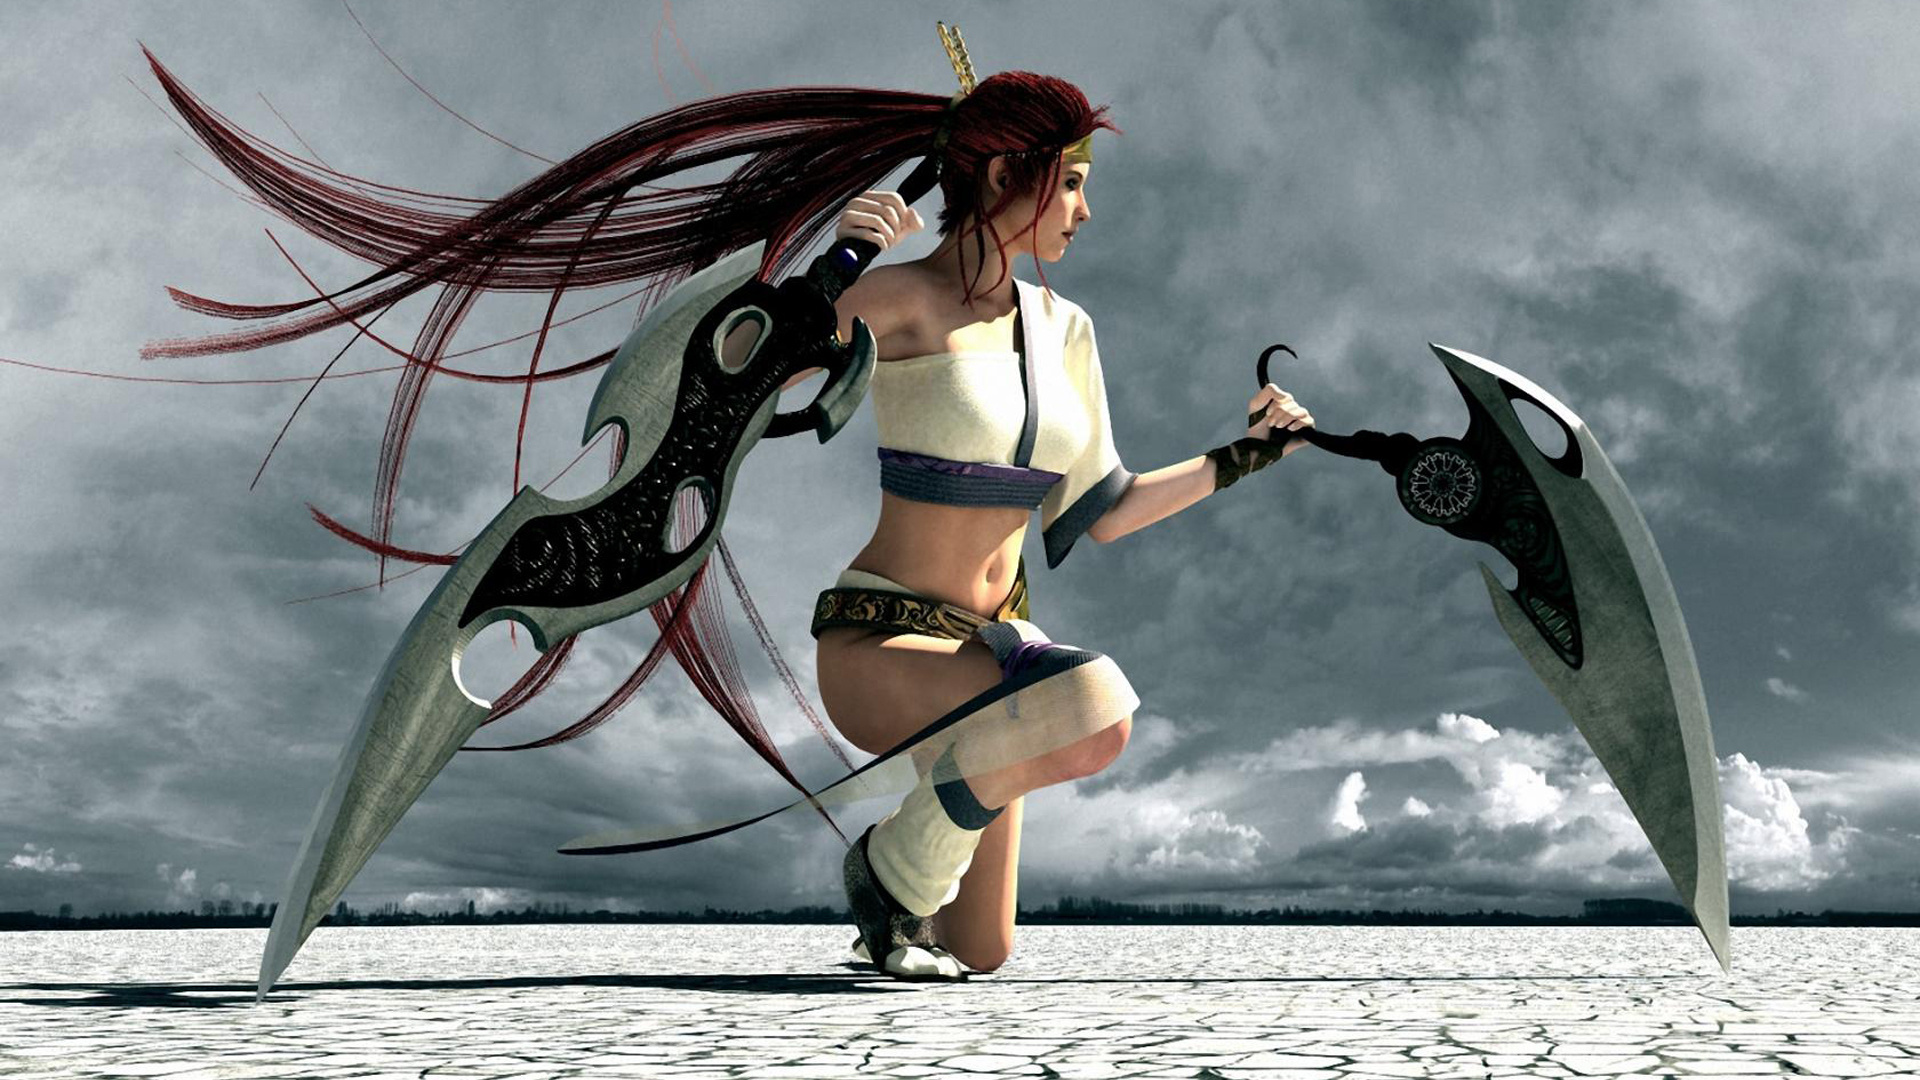 Heavenly Sword Game Women Girl Girls Weapon Weapons Swords Wallpapers Hd Desktop And